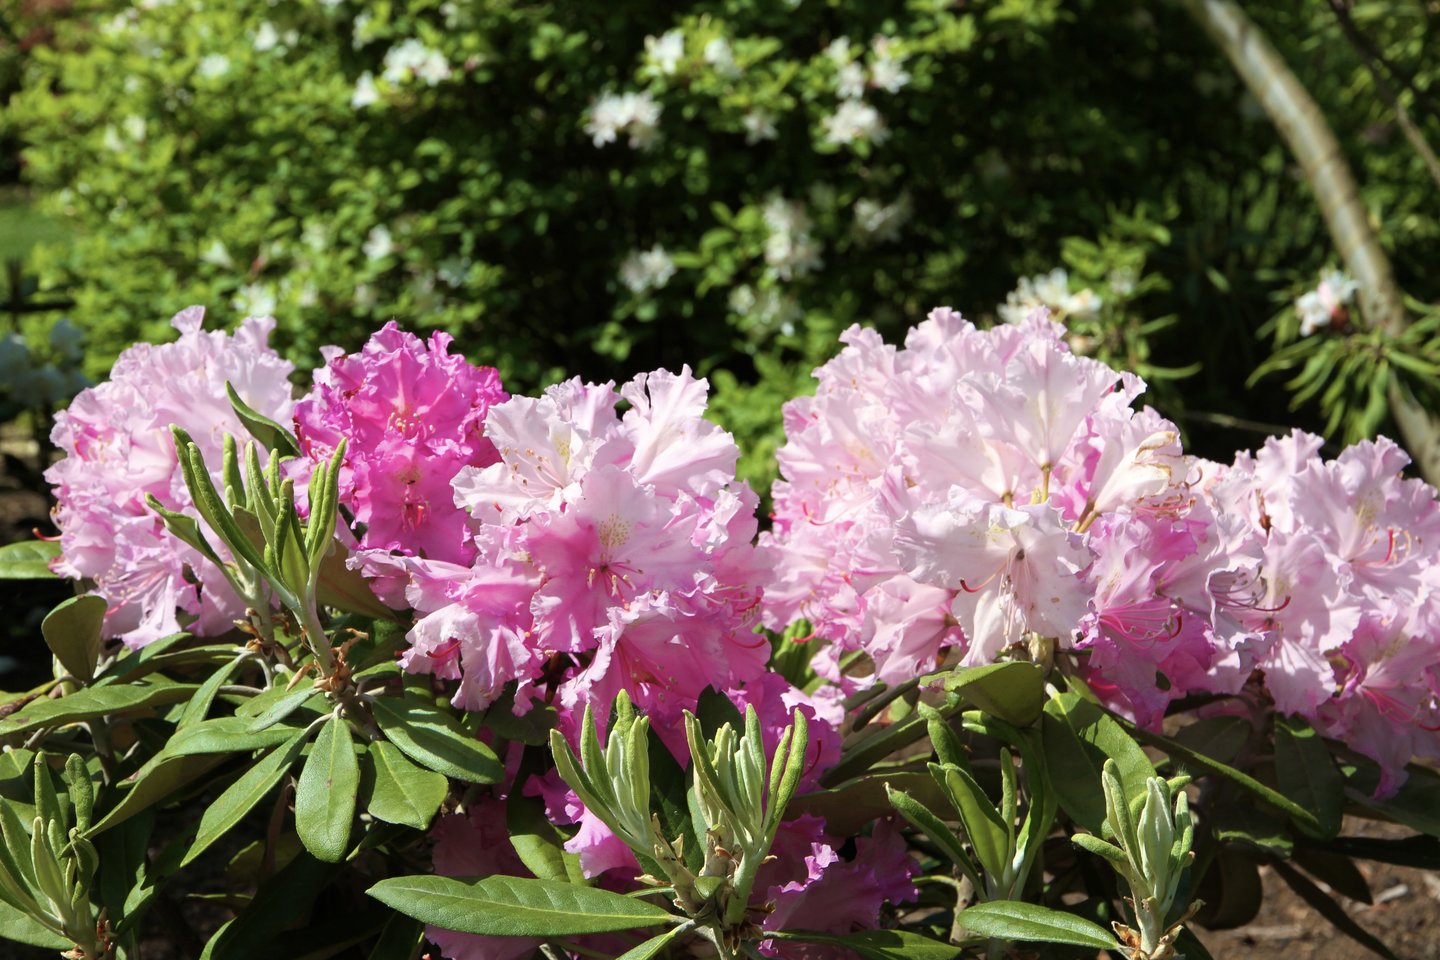 Šiuo metu rododendrynas pasipuošęs gausiausia spalvų ir formų žiedų įvairove.<br>VDU Botanikos sodo nuotr. 